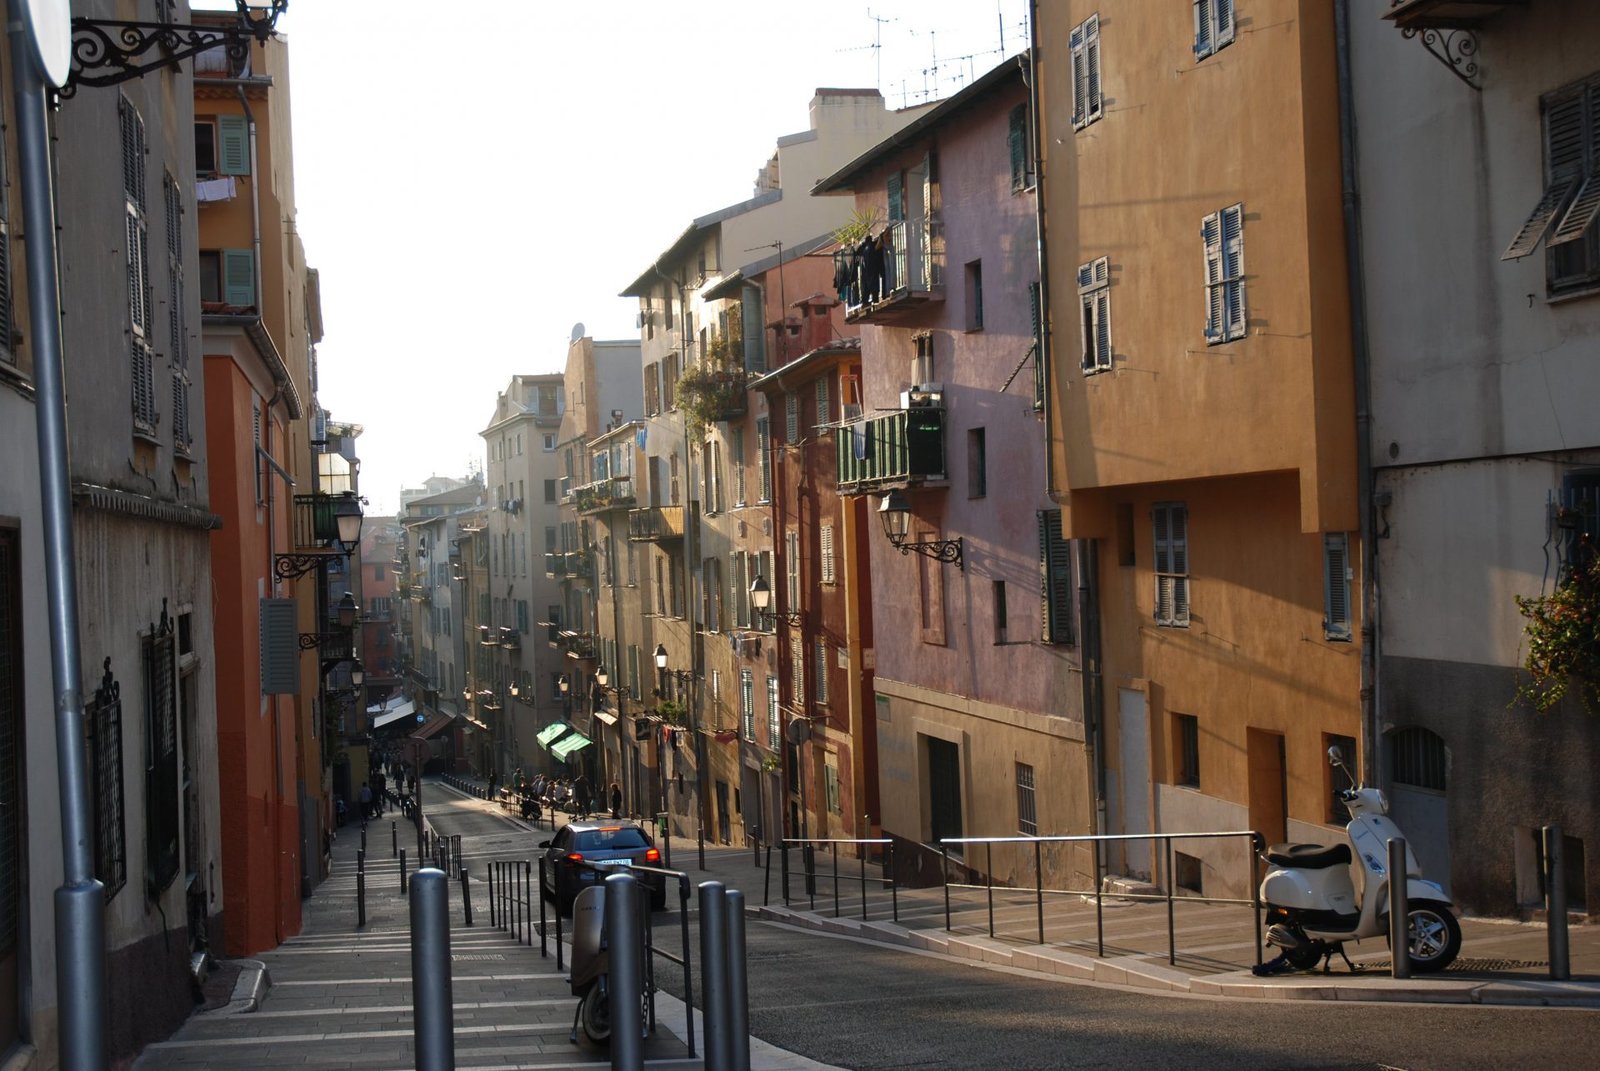 Улочка в центре города, Ницца, Франция. Апрель 2011